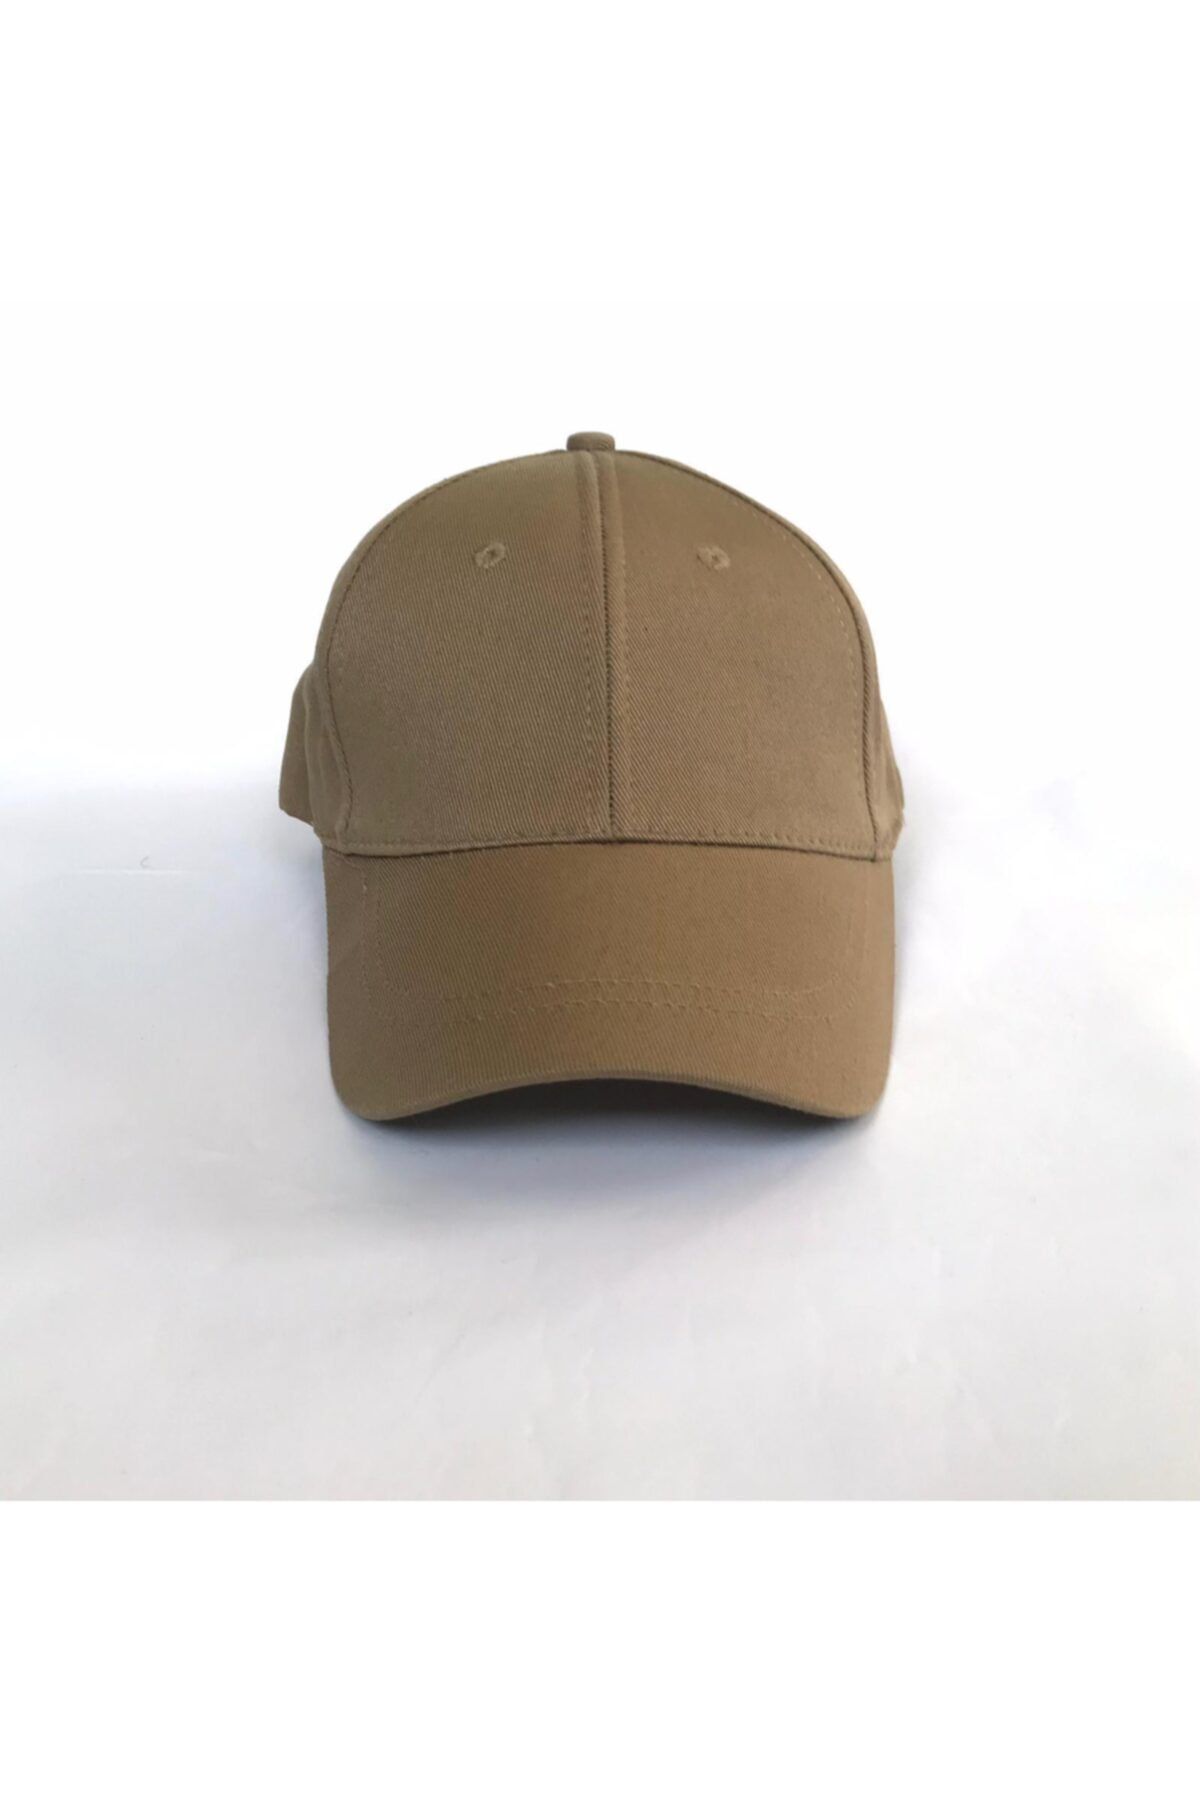 salarticaret Unisex Koyu Bej Spor Arkası Cırtlı Ayarlanabilir Şapka 55-60 Cm